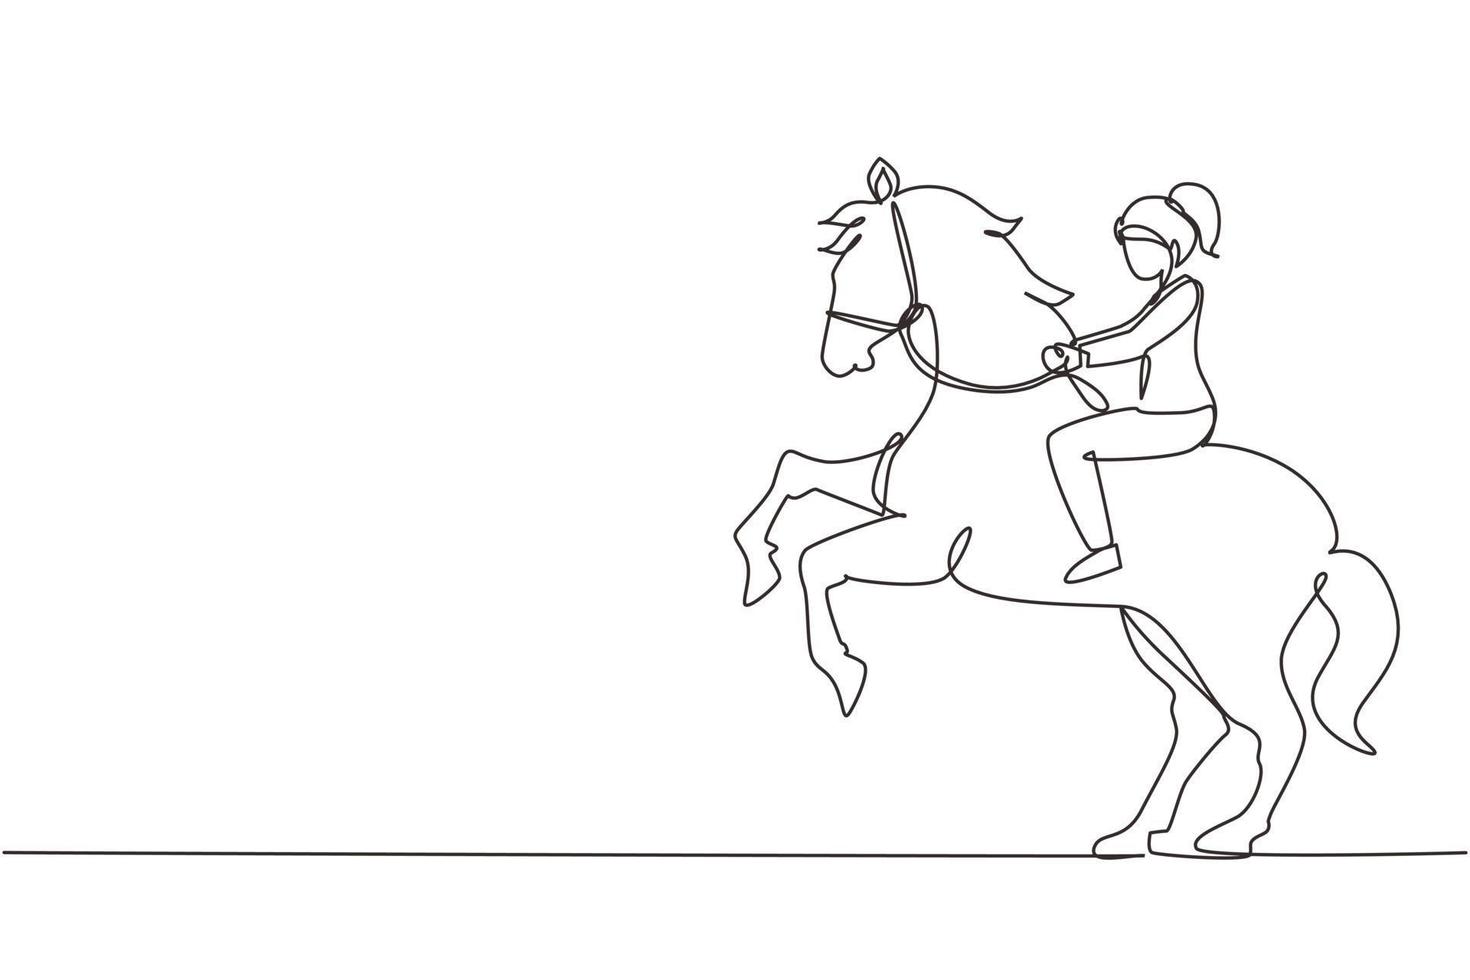 un disegno a tratteggio continuo imprenditrice a cavallo simbolo di successo. concetto di metafora aziendale, guardando l'obiettivo, il raggiungimento, la leadership. illustrazione grafica vettoriale di disegno a linea singola